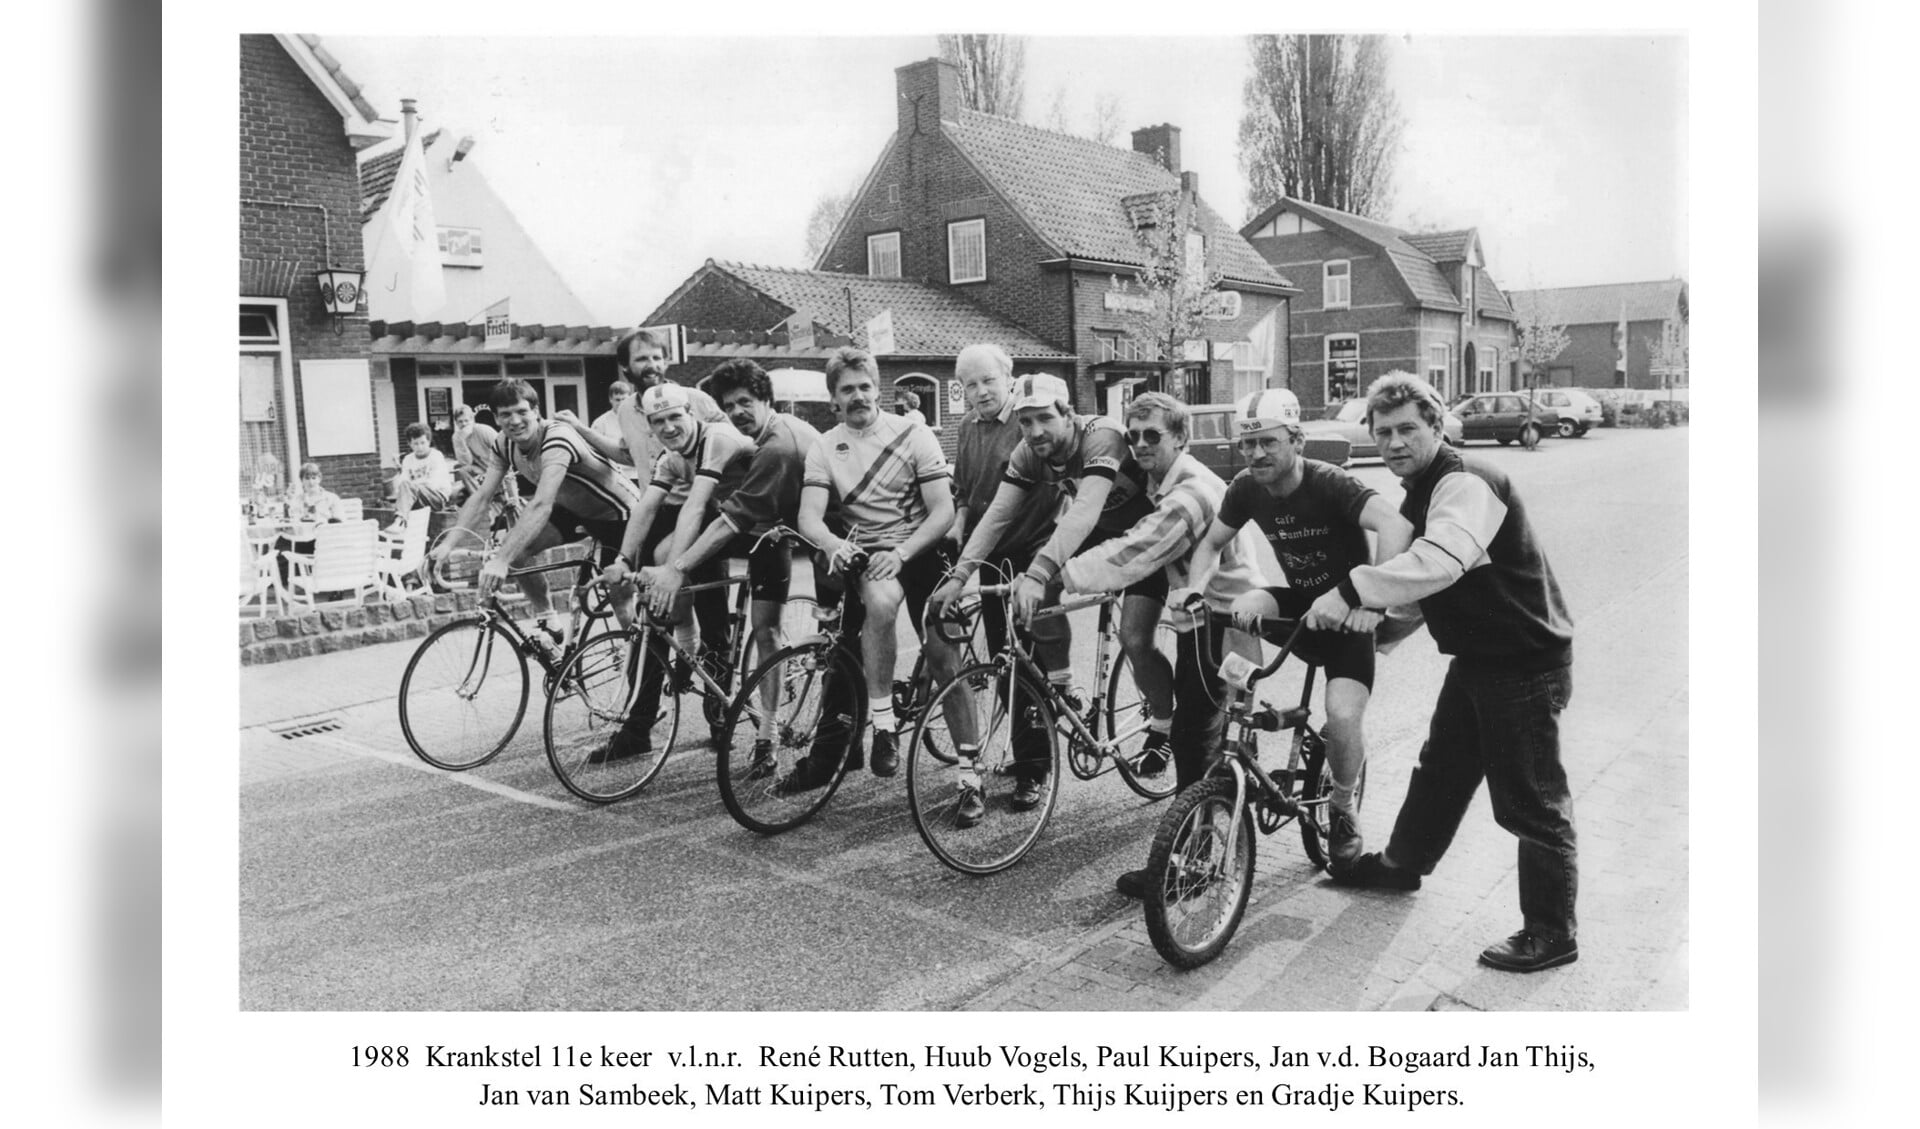 Een foto van de fietsgroep ‘Krankstel’ met hun begeleiders ter hoogte van La Marmotte. Tijdens de Pinksterdagen van 1988 wisten ze voor de elfde keer een ultralange fietstocht te volbrengen. Het is één van de 700 foto’s in de expositie ‘Oploo in de vorige eeuw’.  